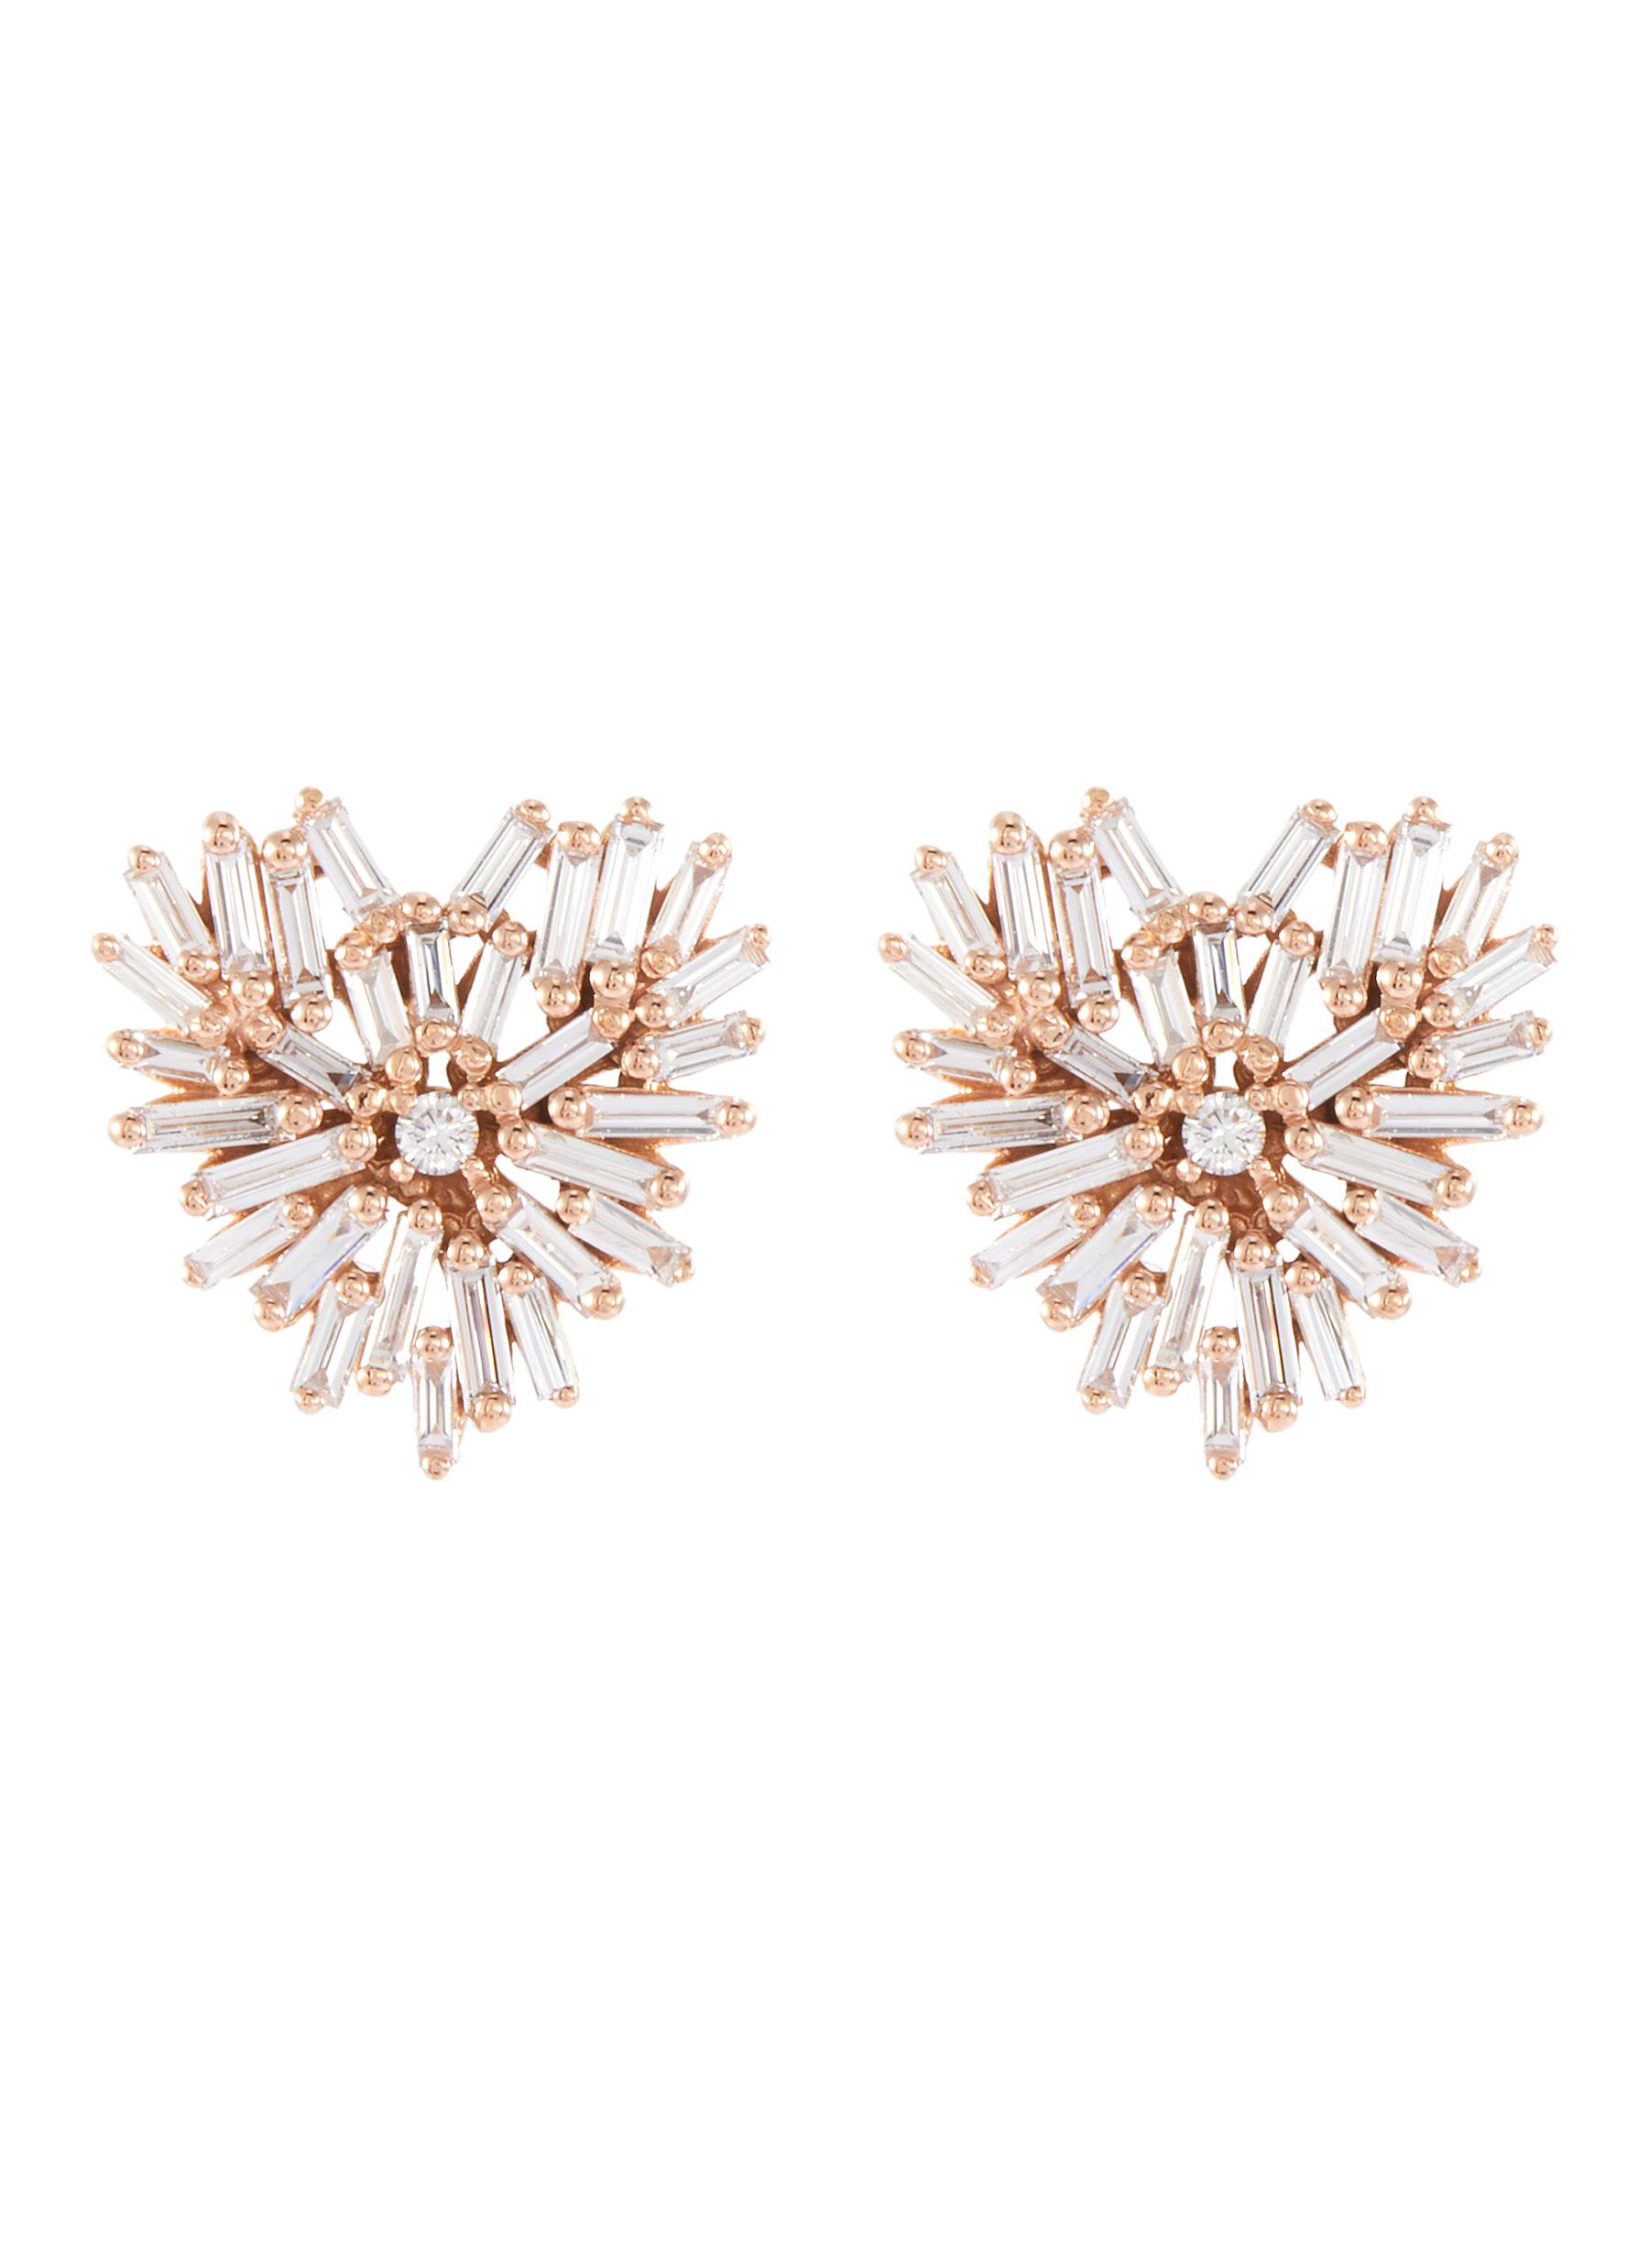 ’Fireworks’ diamond 18k rose gold heart earrings